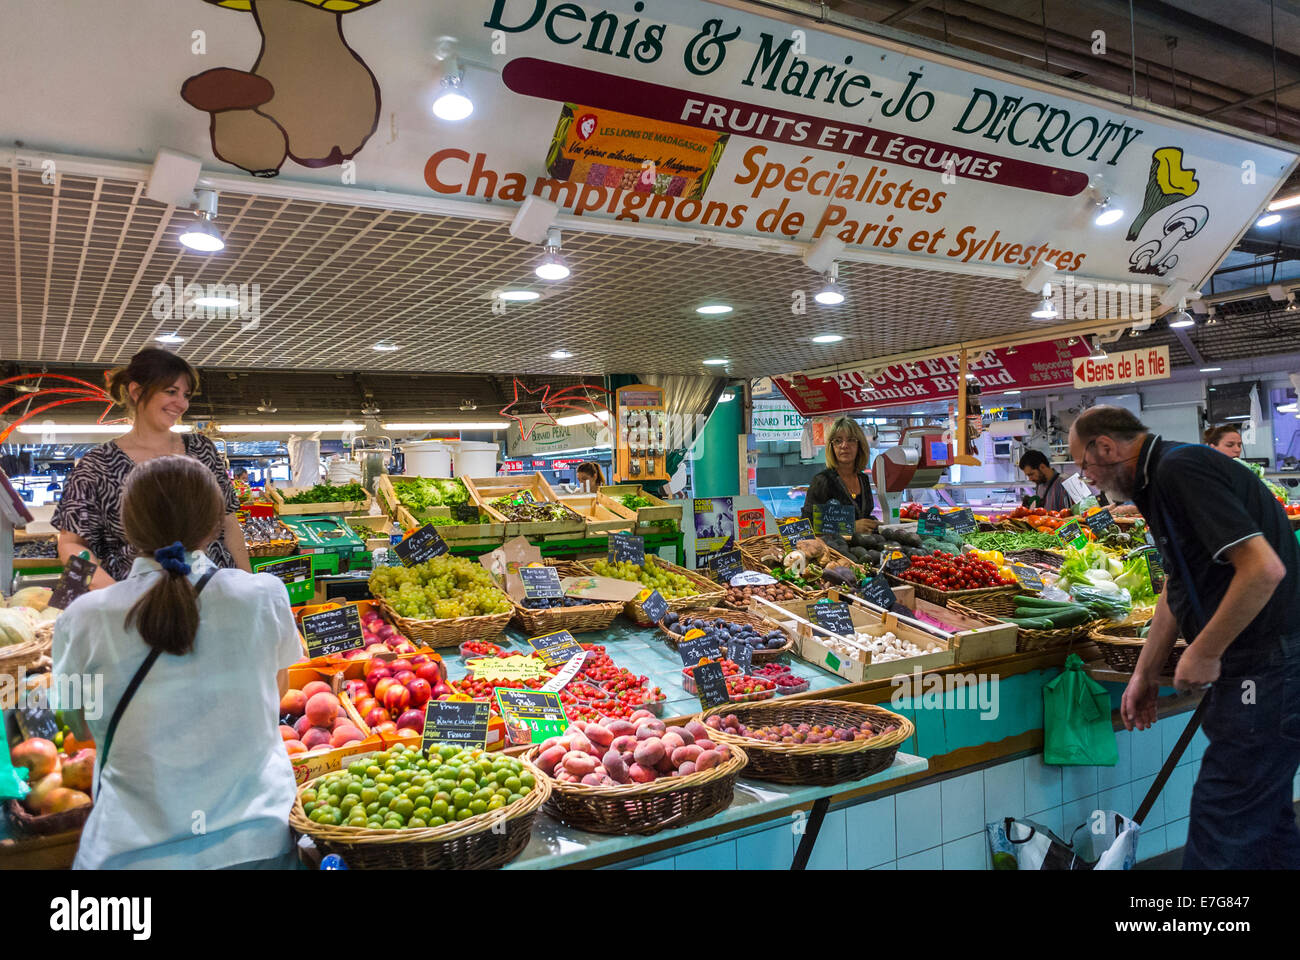 Bordeaux, France, People Shopping, French Food Market, 'marché des Capucins', produits frais, épicerie de quartier légumes 'Denis & Marie-JO Decroty' consommation locale, légumes à l'intérieur Banque D'Images